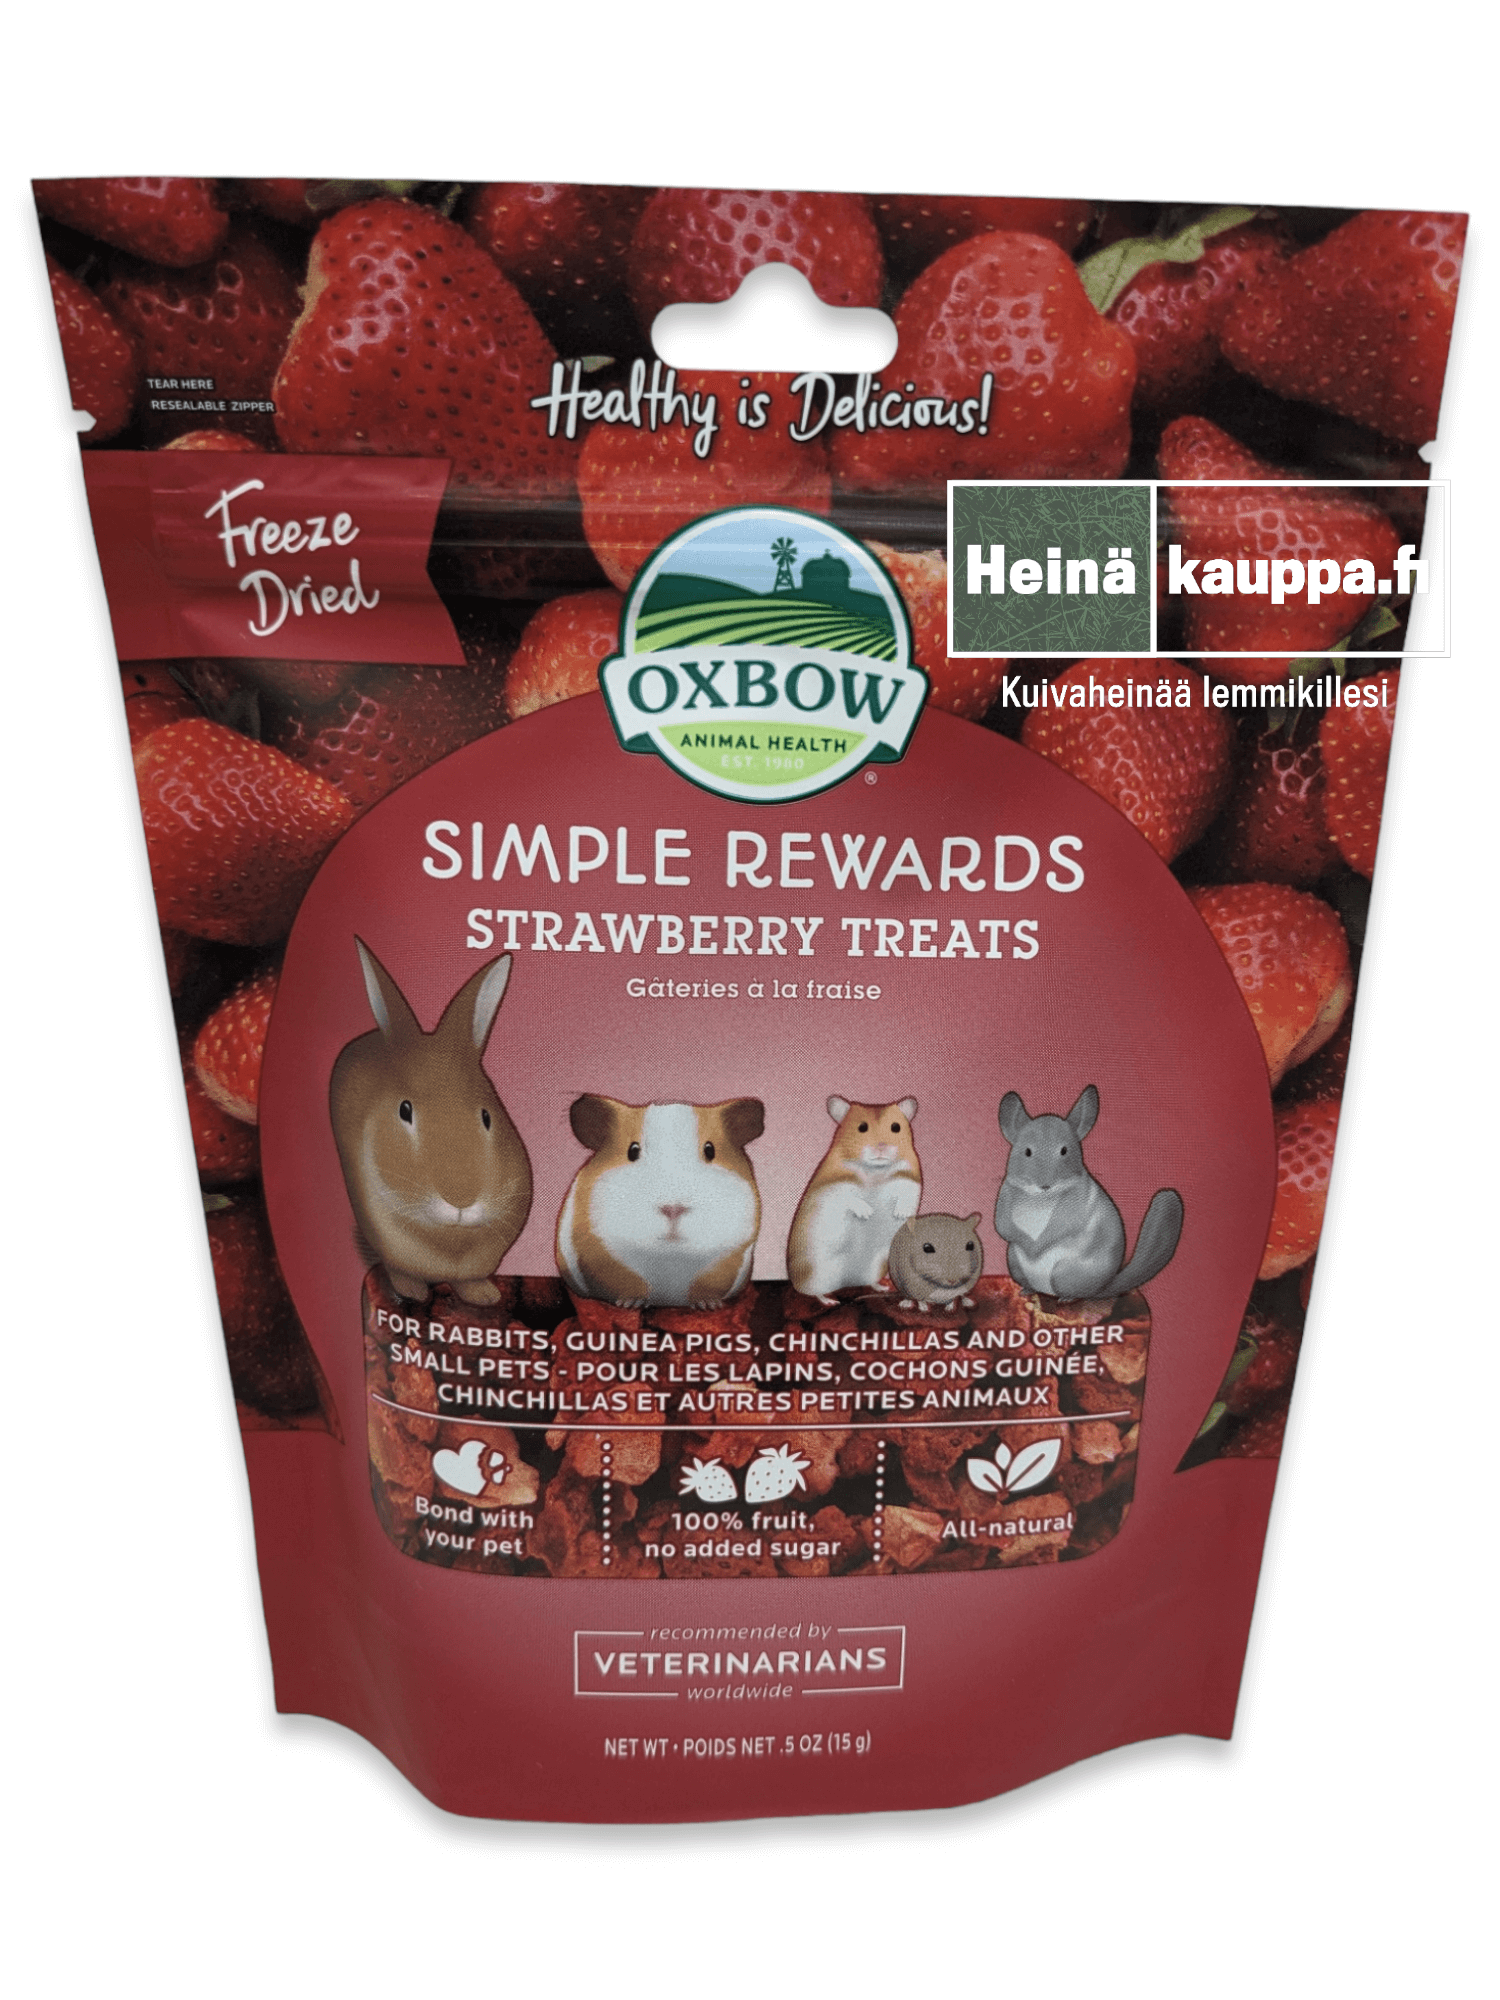 Oxbow simple rewards strawberry treats